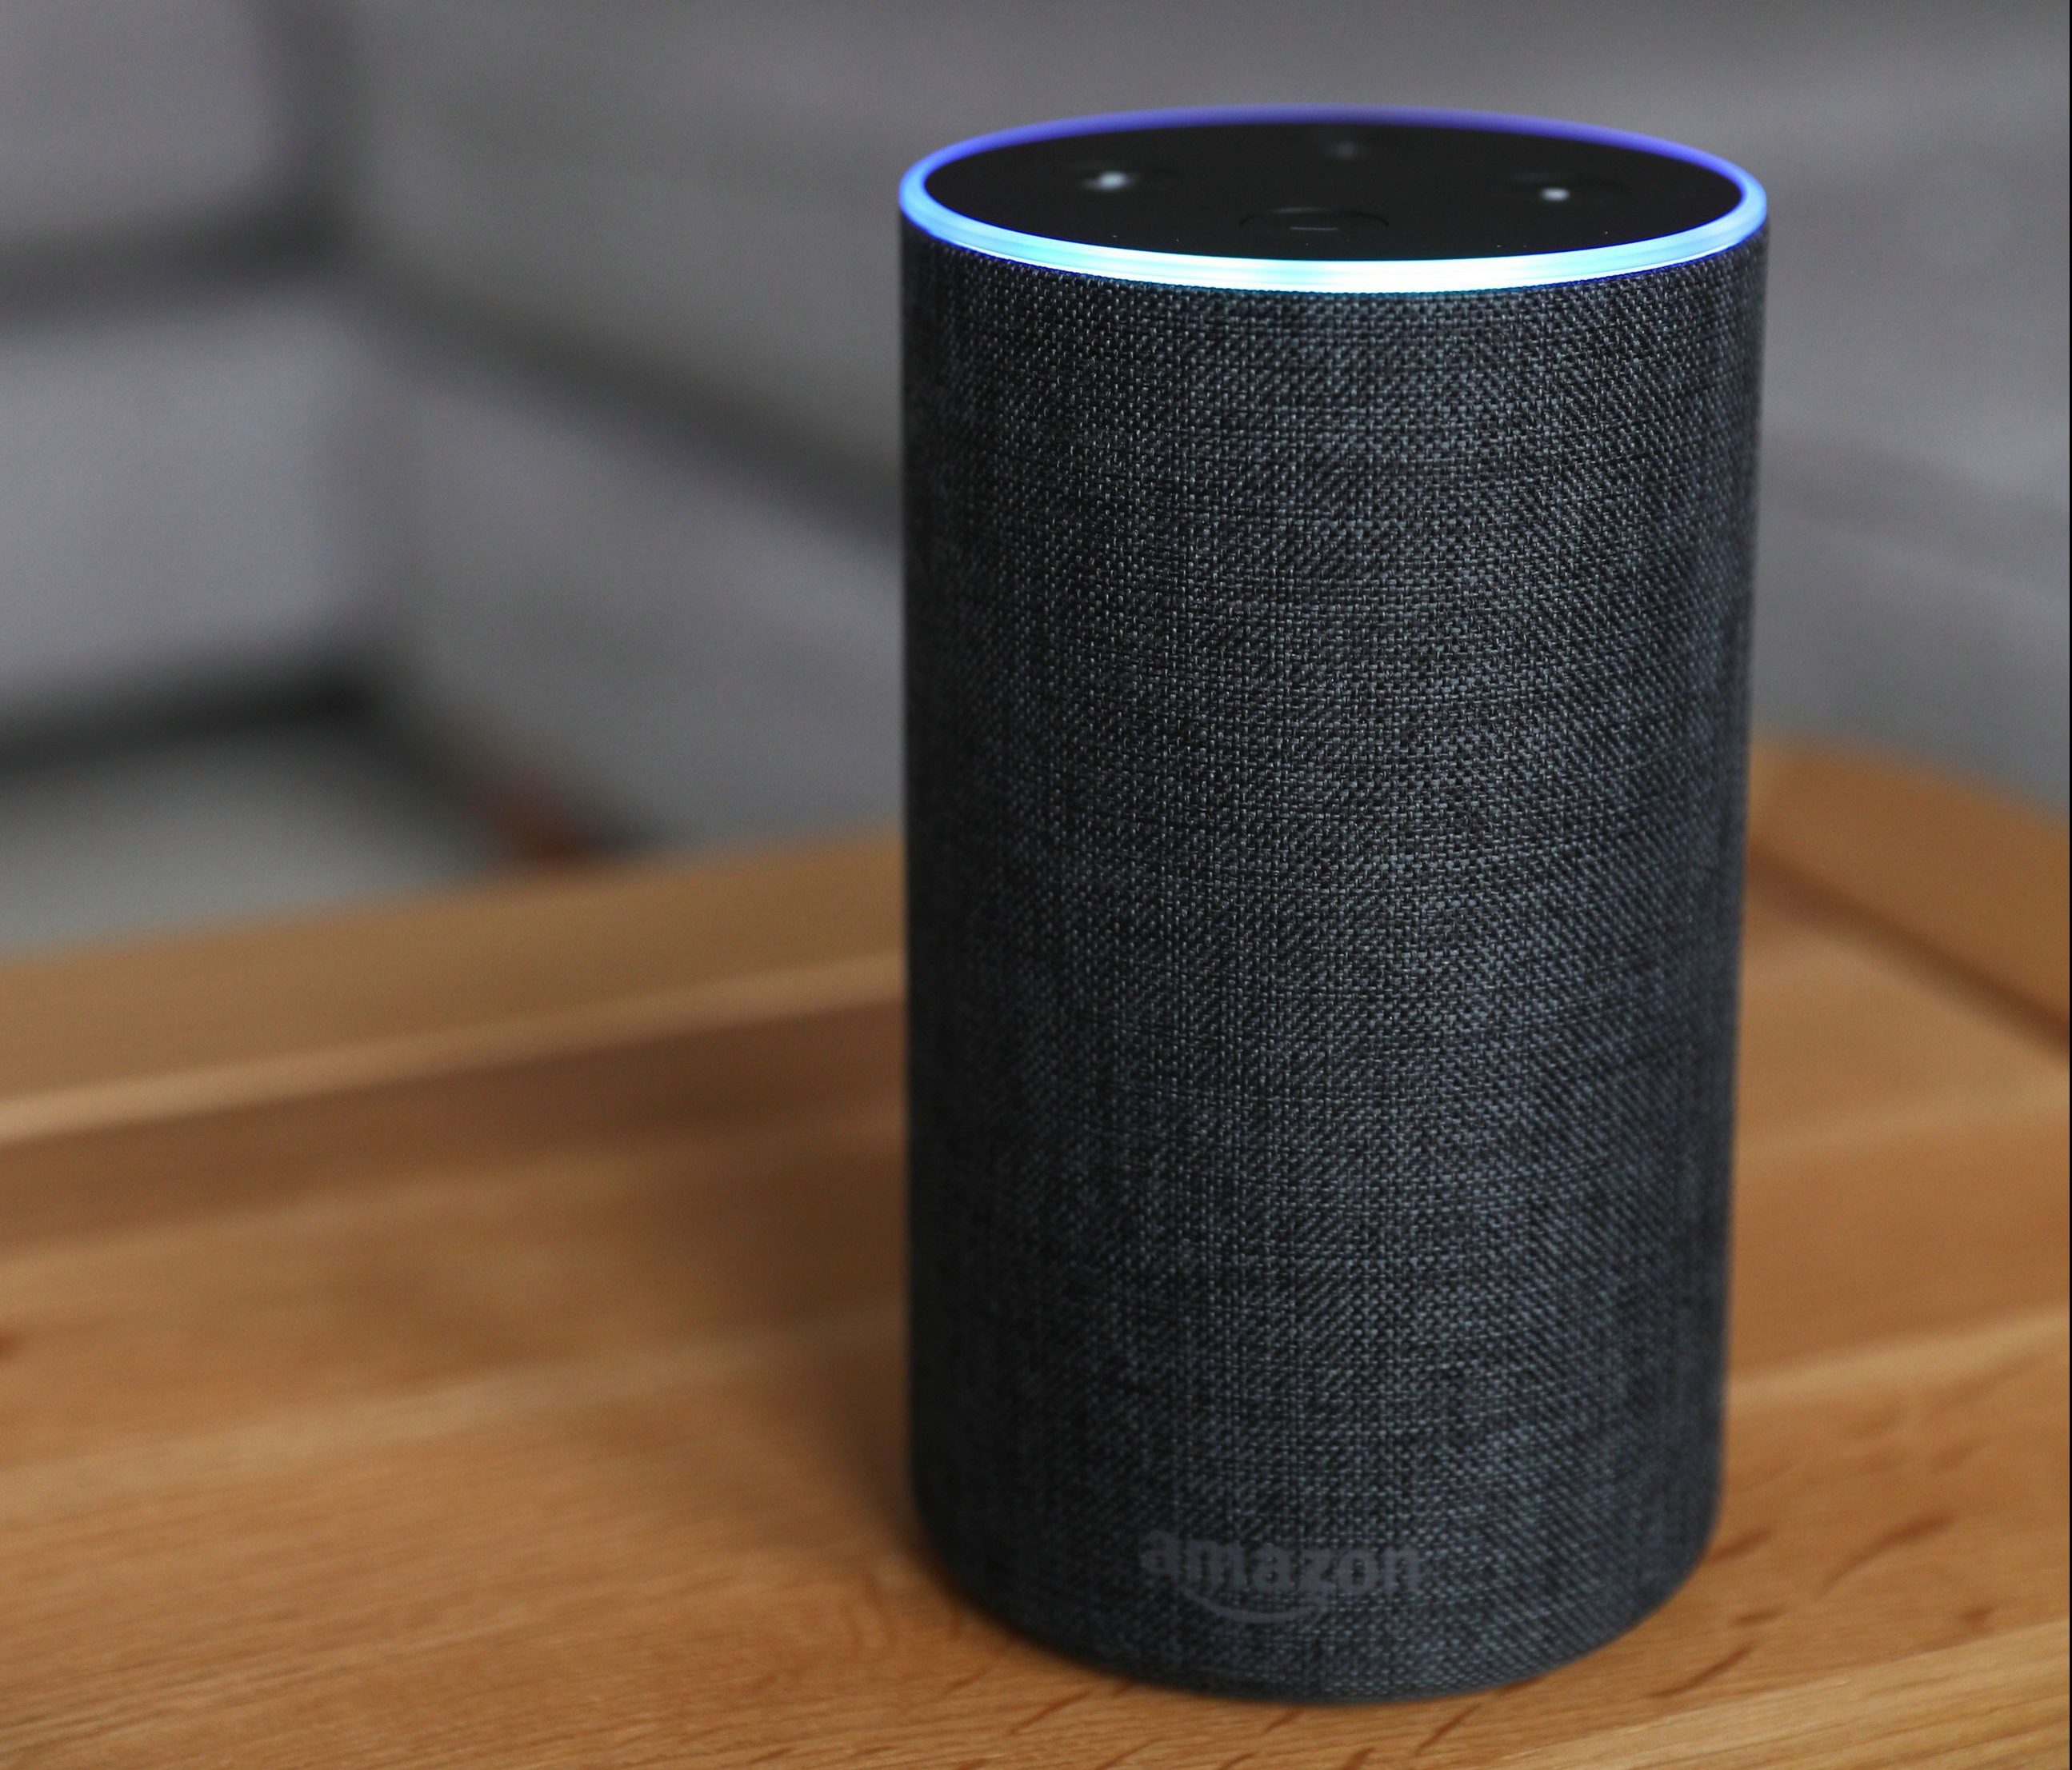  Asisten virtual yang diaktifkan suara dari Amazon Membalas 'Alexa'